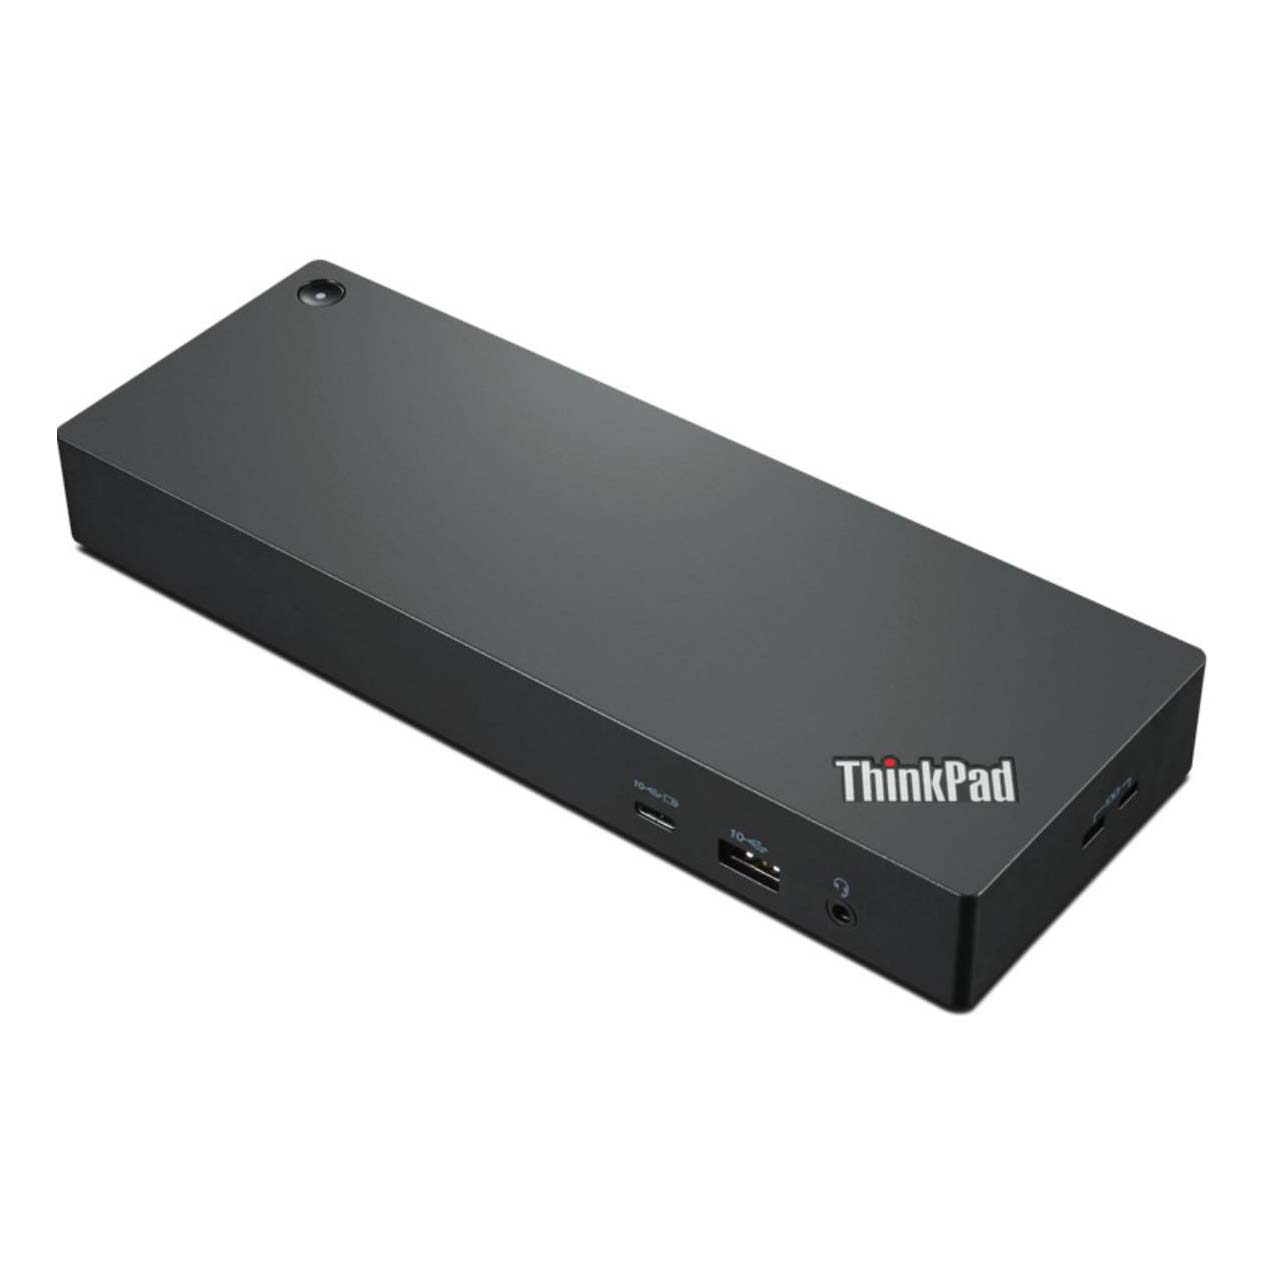 Док-станция Lenovo Thinkpad Thunderbolt 4 Workstation Dock, черный док станция lenovo thinkpad universal thunderbolt 4 dock 40b00135cn